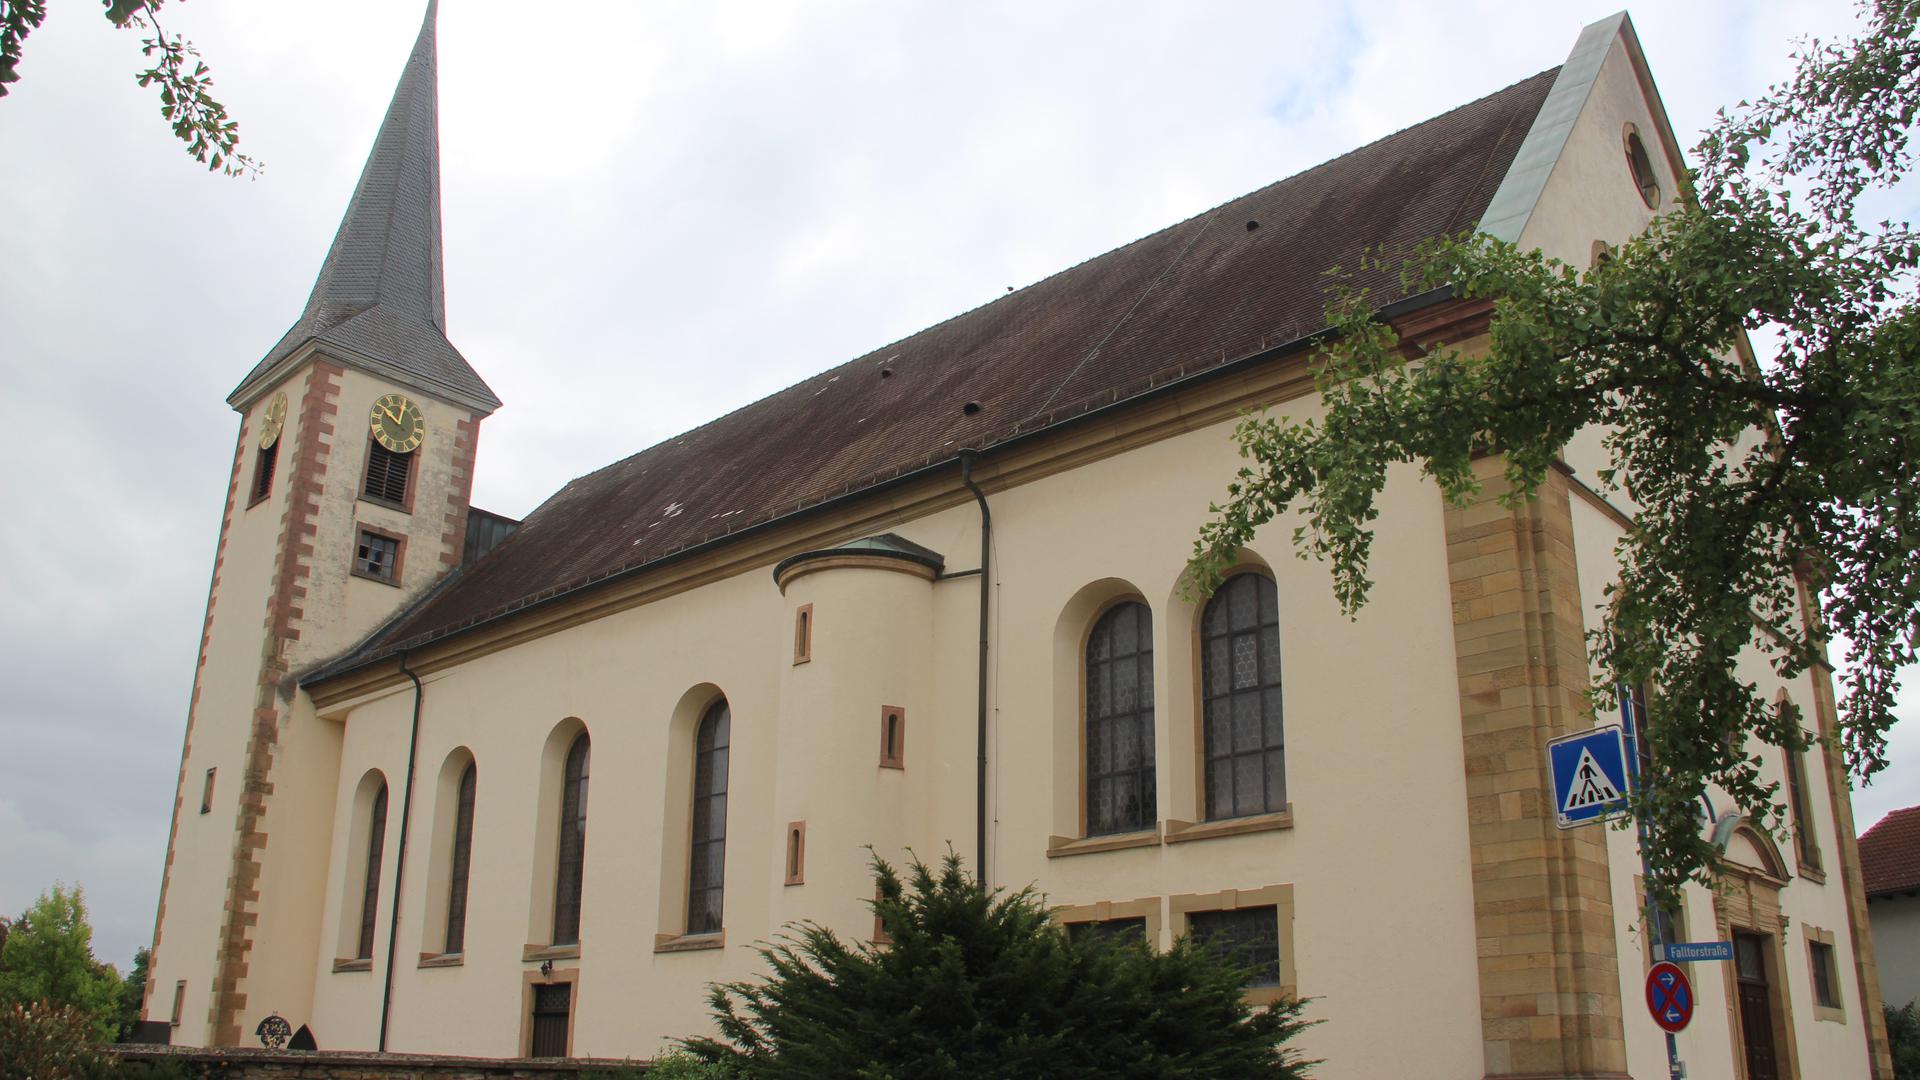 Diebe brachen eine Seitentür der Pfarrkirche St. Lambertus in Mingolsheim auf und stahlen sakrale Gegenstände inklusive Tresor